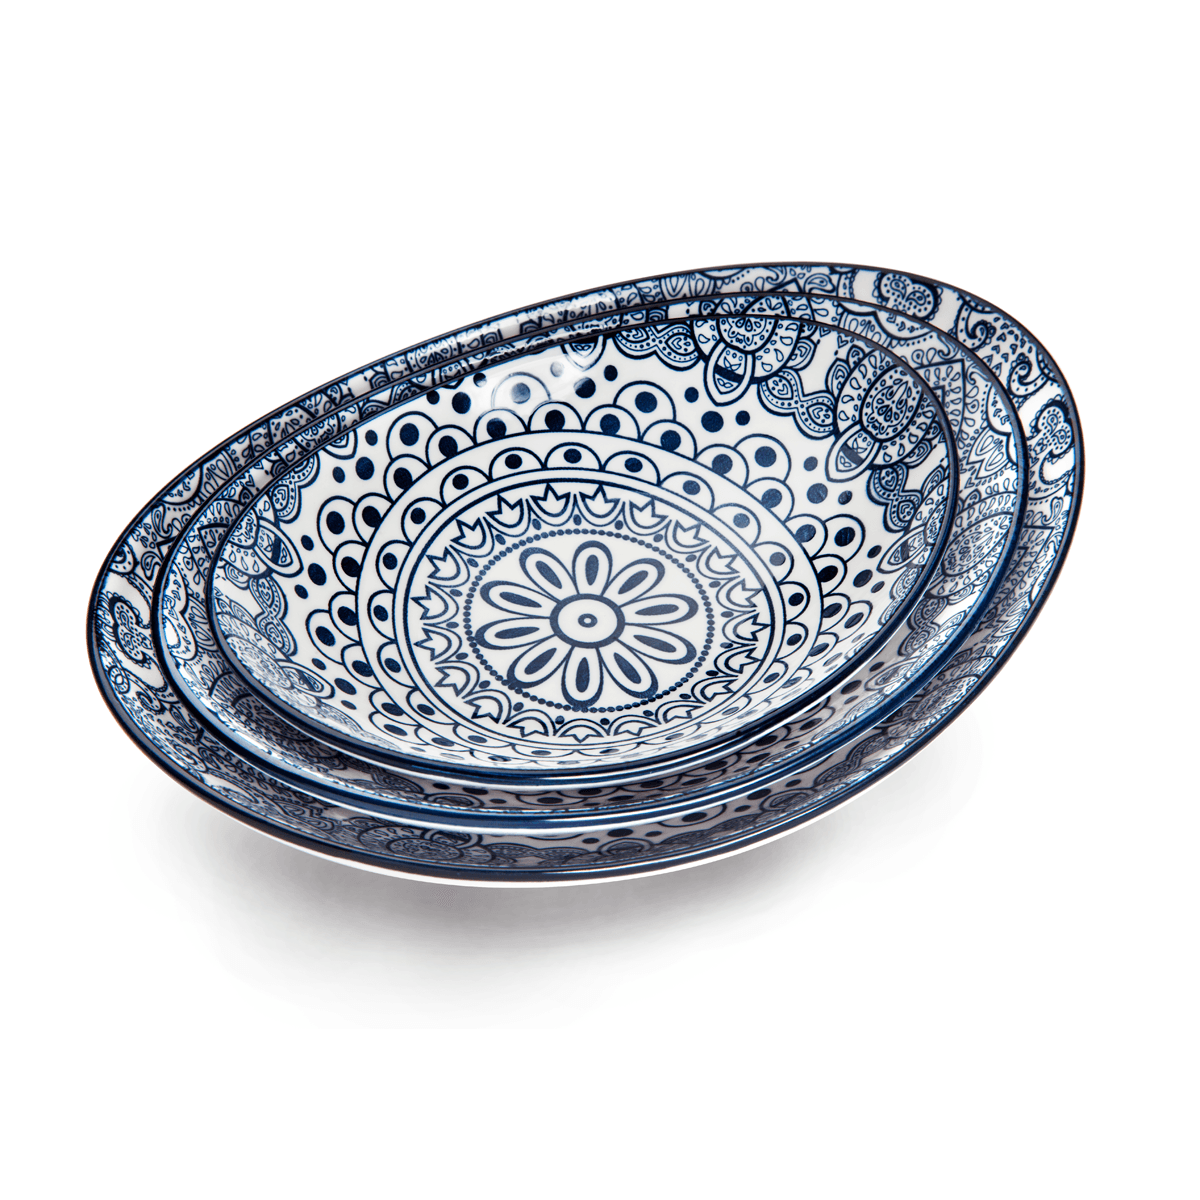 Che Brucia Arabesque Blue Porcelain Oval Bowl 15 cm / 6" Blue Ivory Porcelain